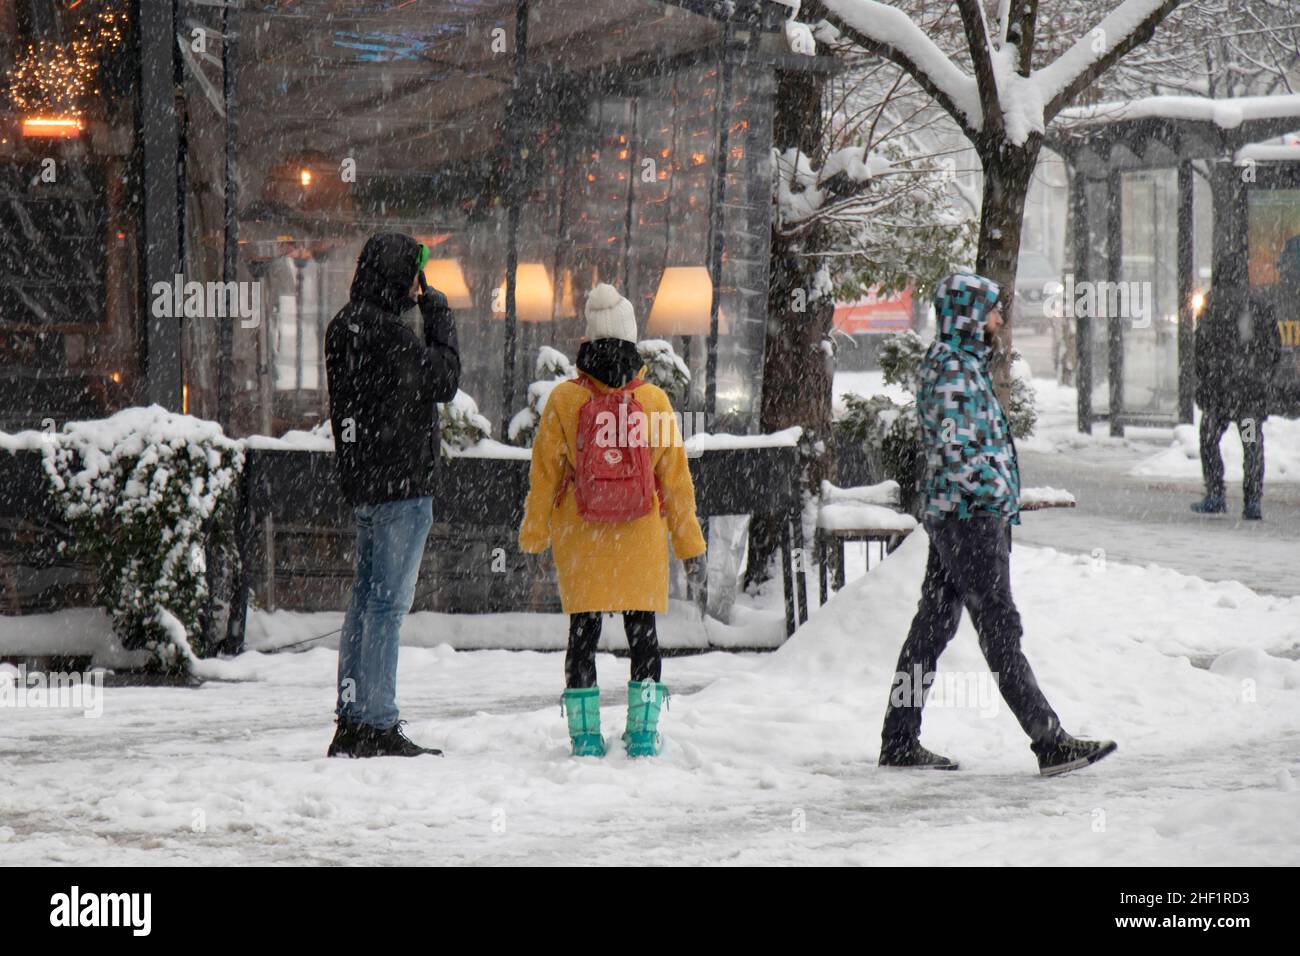 Belgrado, Serbia - 11 de enero de 2022: Personas caminando y esperando en las calles nevadas de la ciudad durante las fuertes nevadas Foto de stock